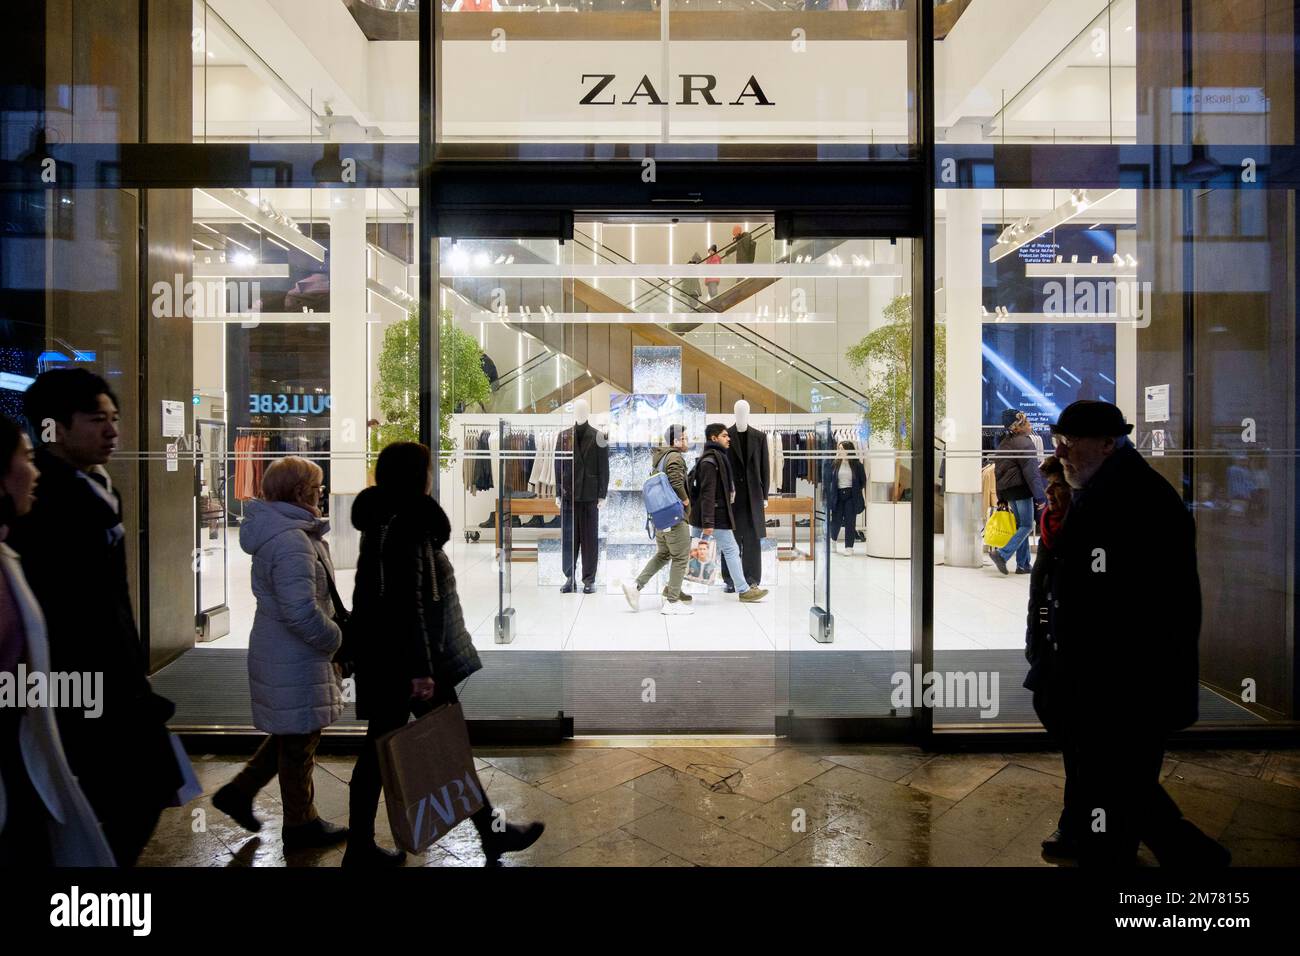 Zara shop window display immagini e fotografie stock ad alta risoluzione -  Alamy